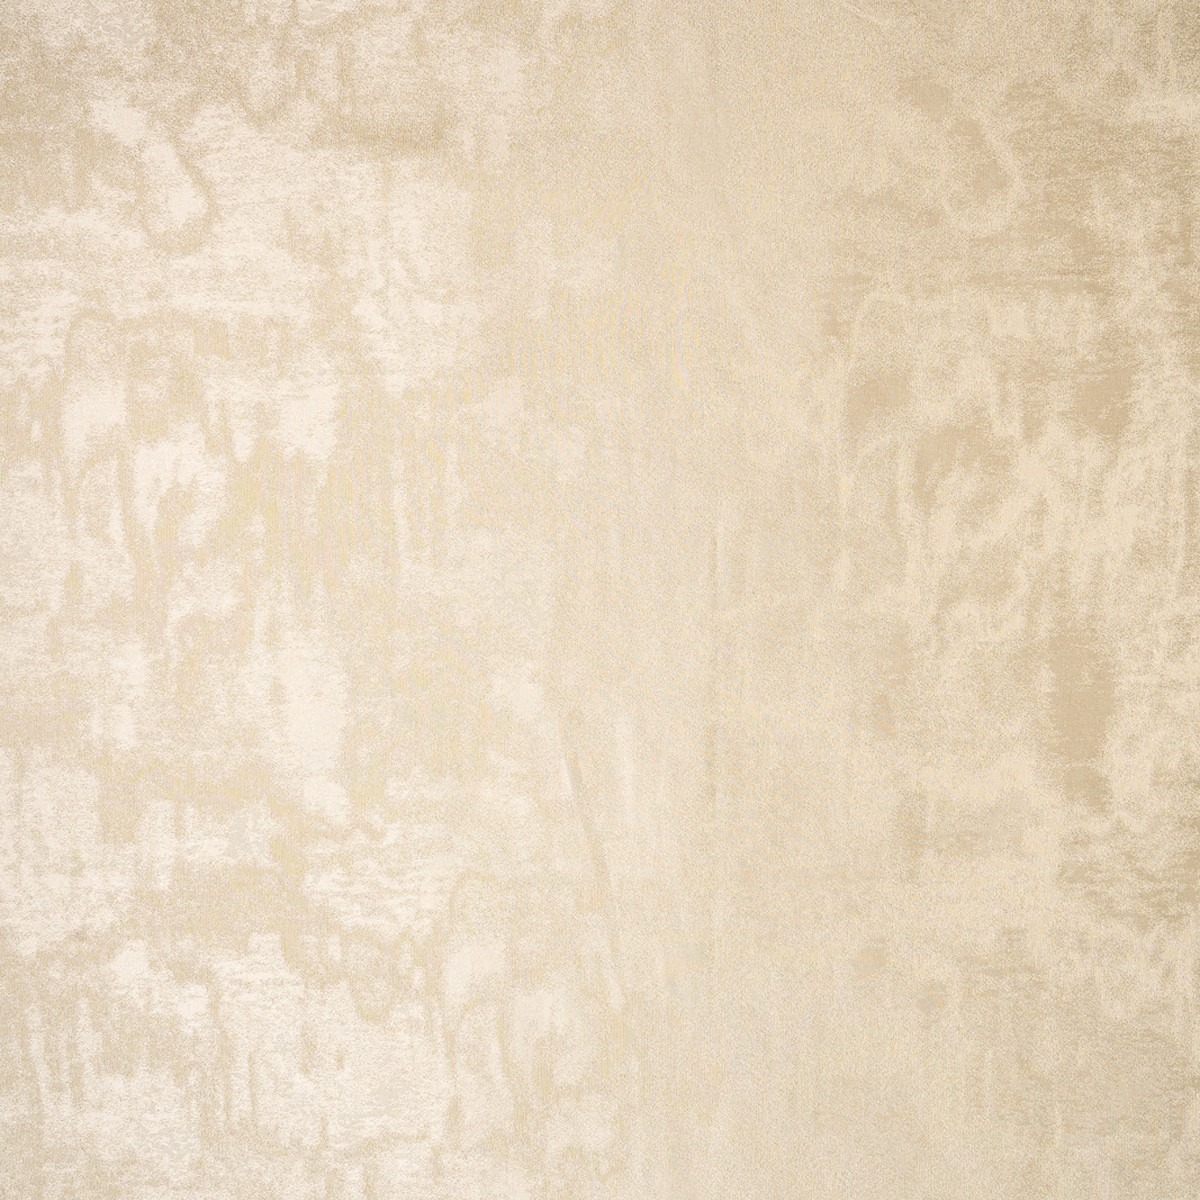  Портьерная ткань ETHEREAL CREAM, ширина 290 см  - Фото